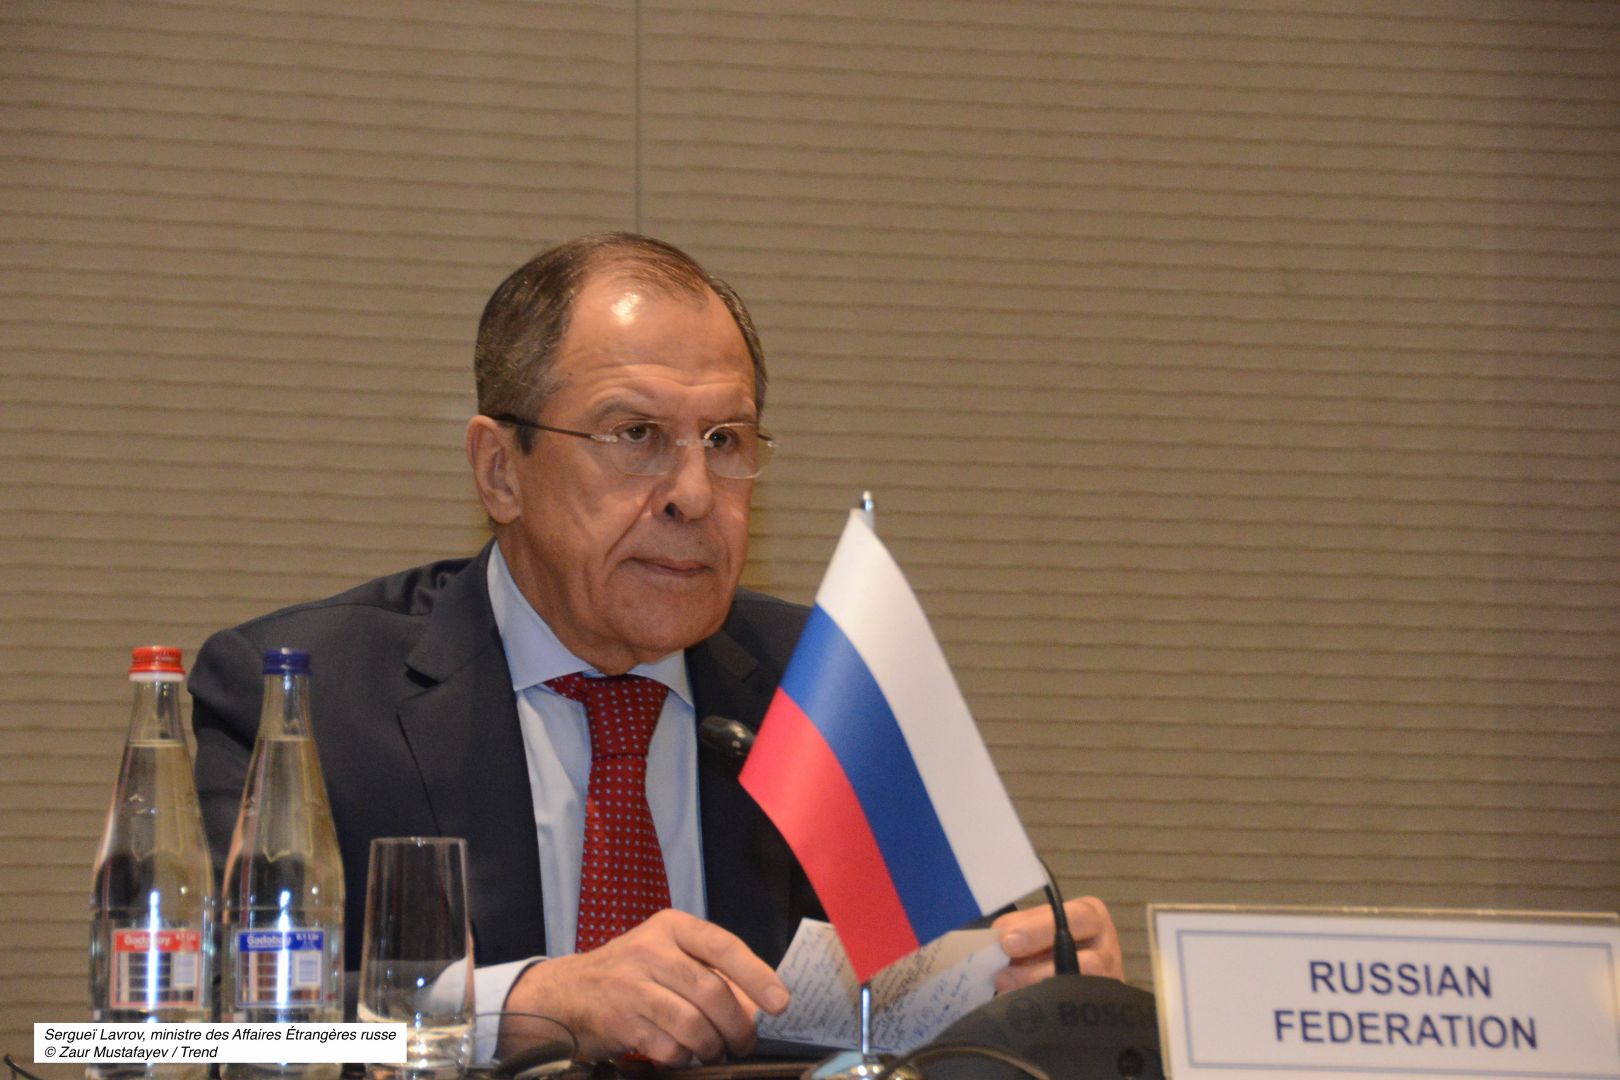 Certaines déclarations de responsables arméniens provoquent des tensions, dit le ministre russe Sergueï Lavrov